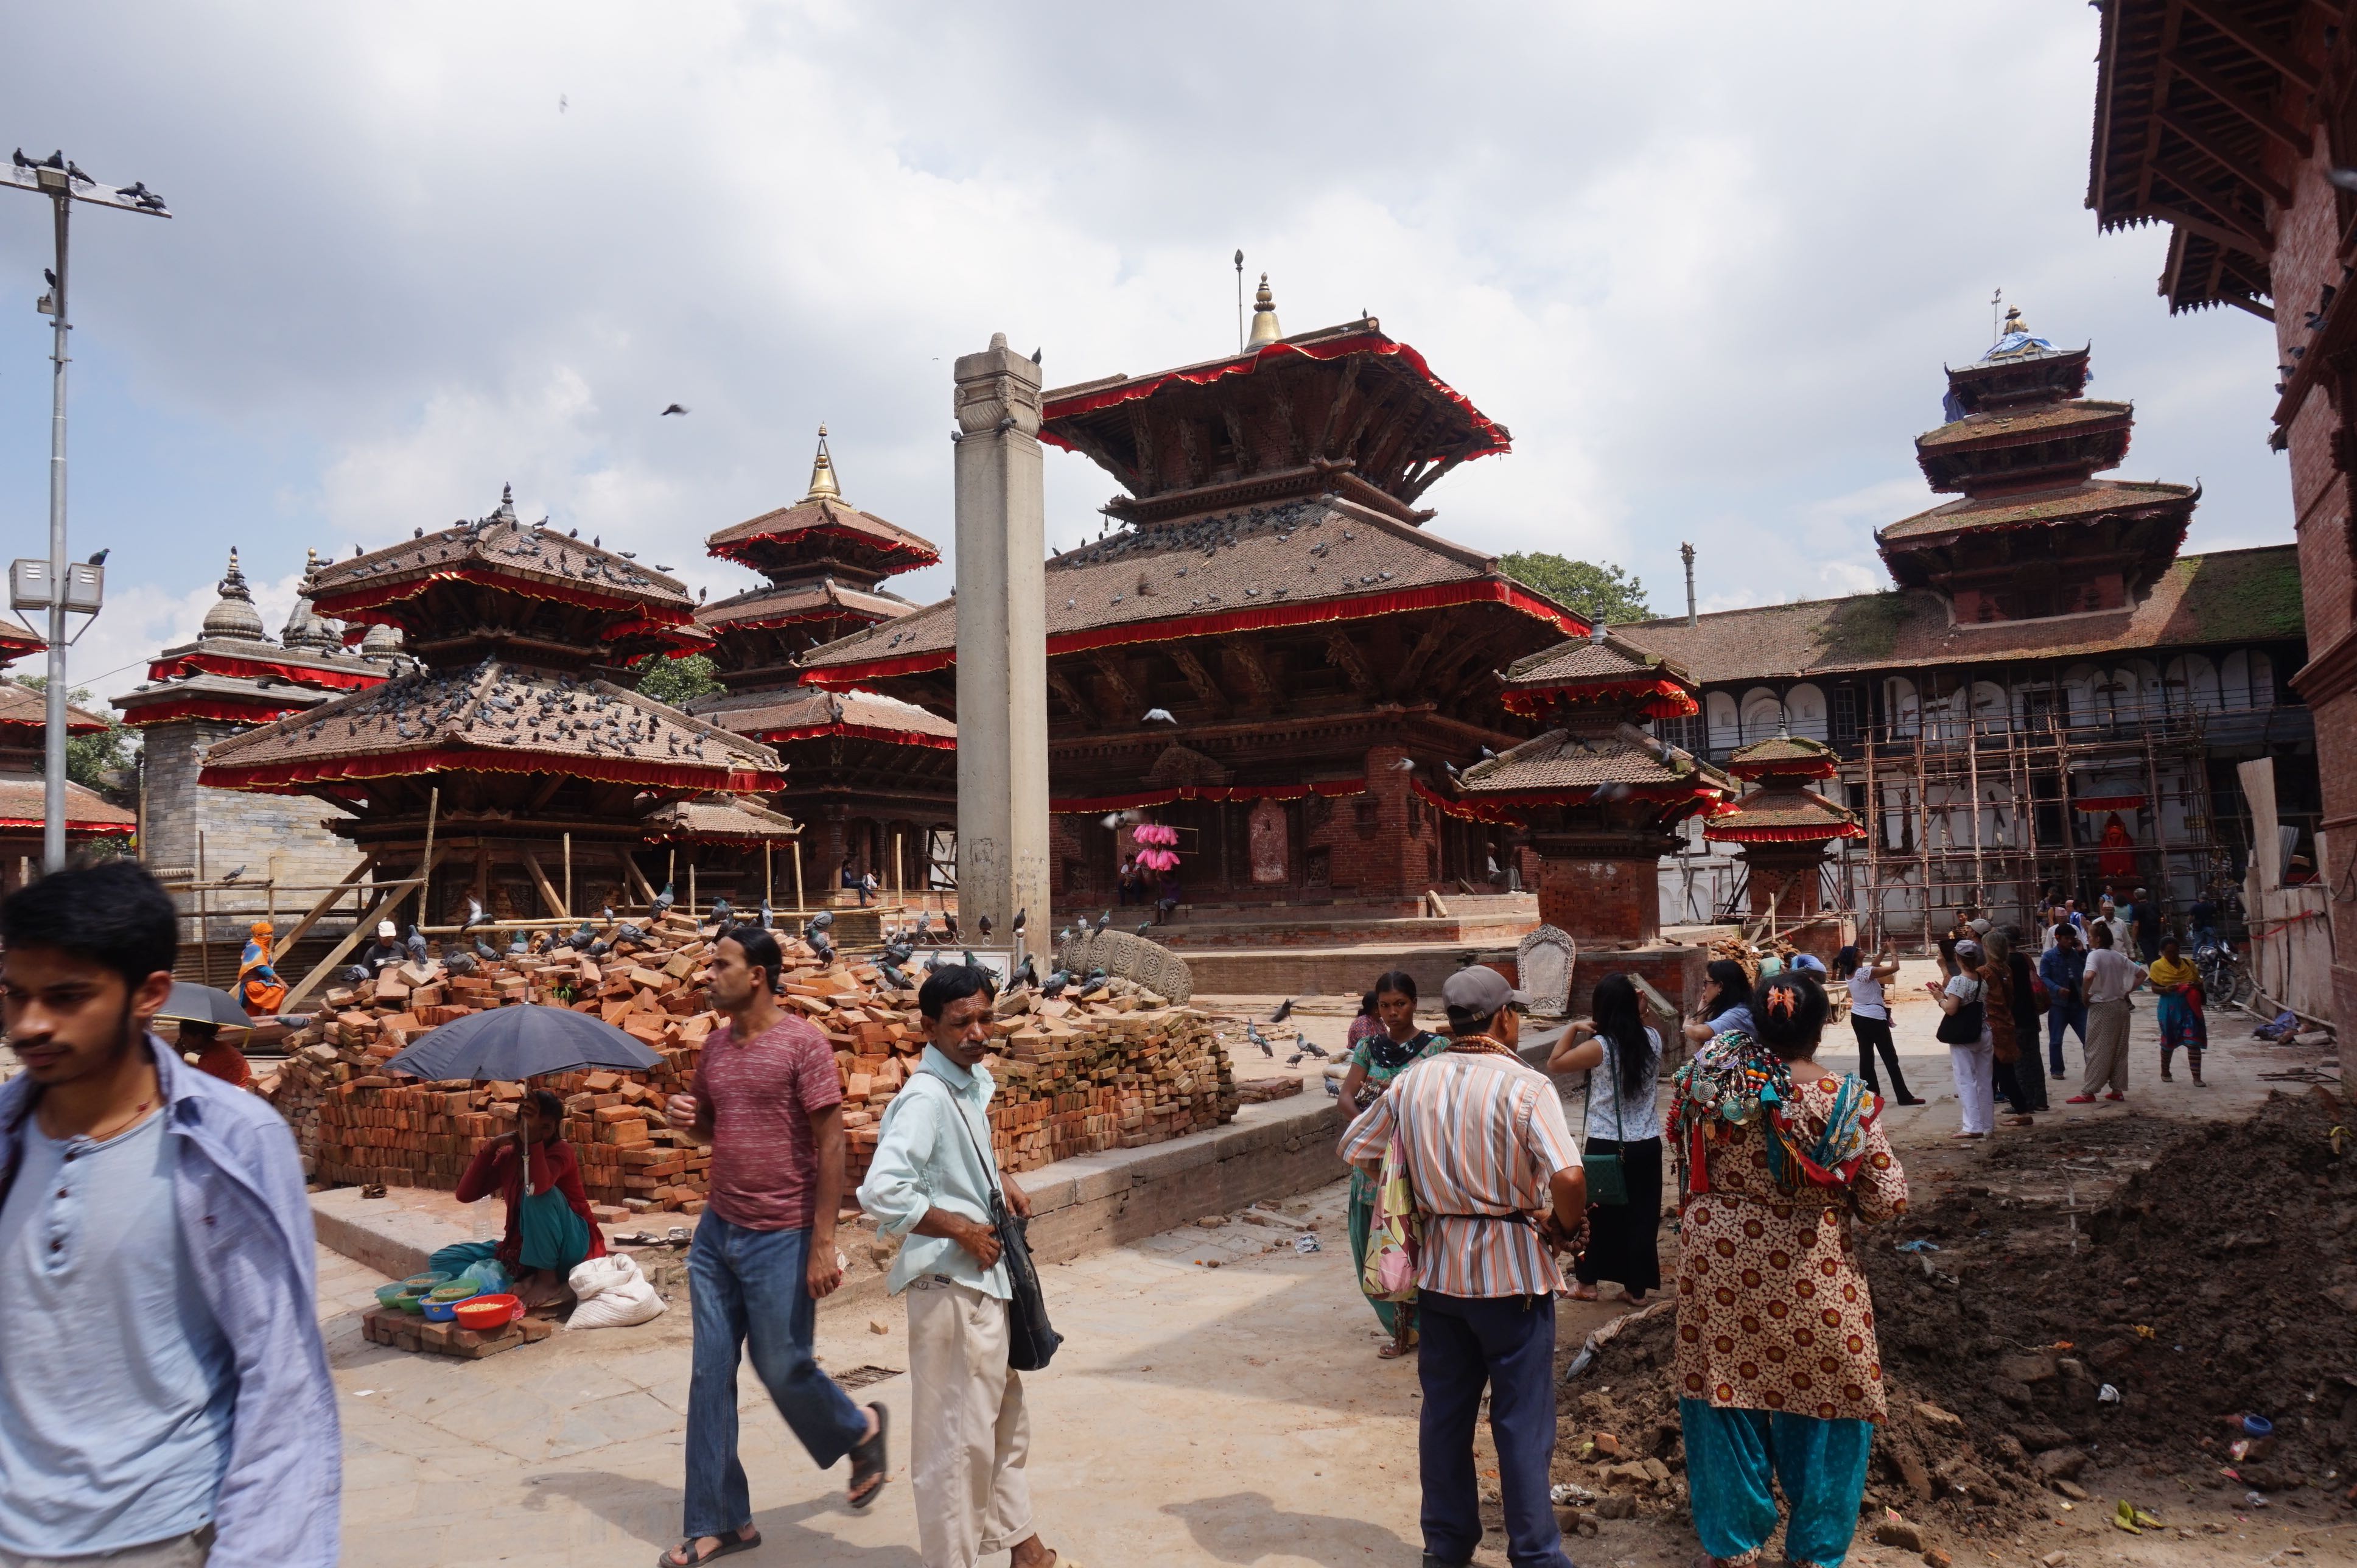 Durbar Square Kathmandu